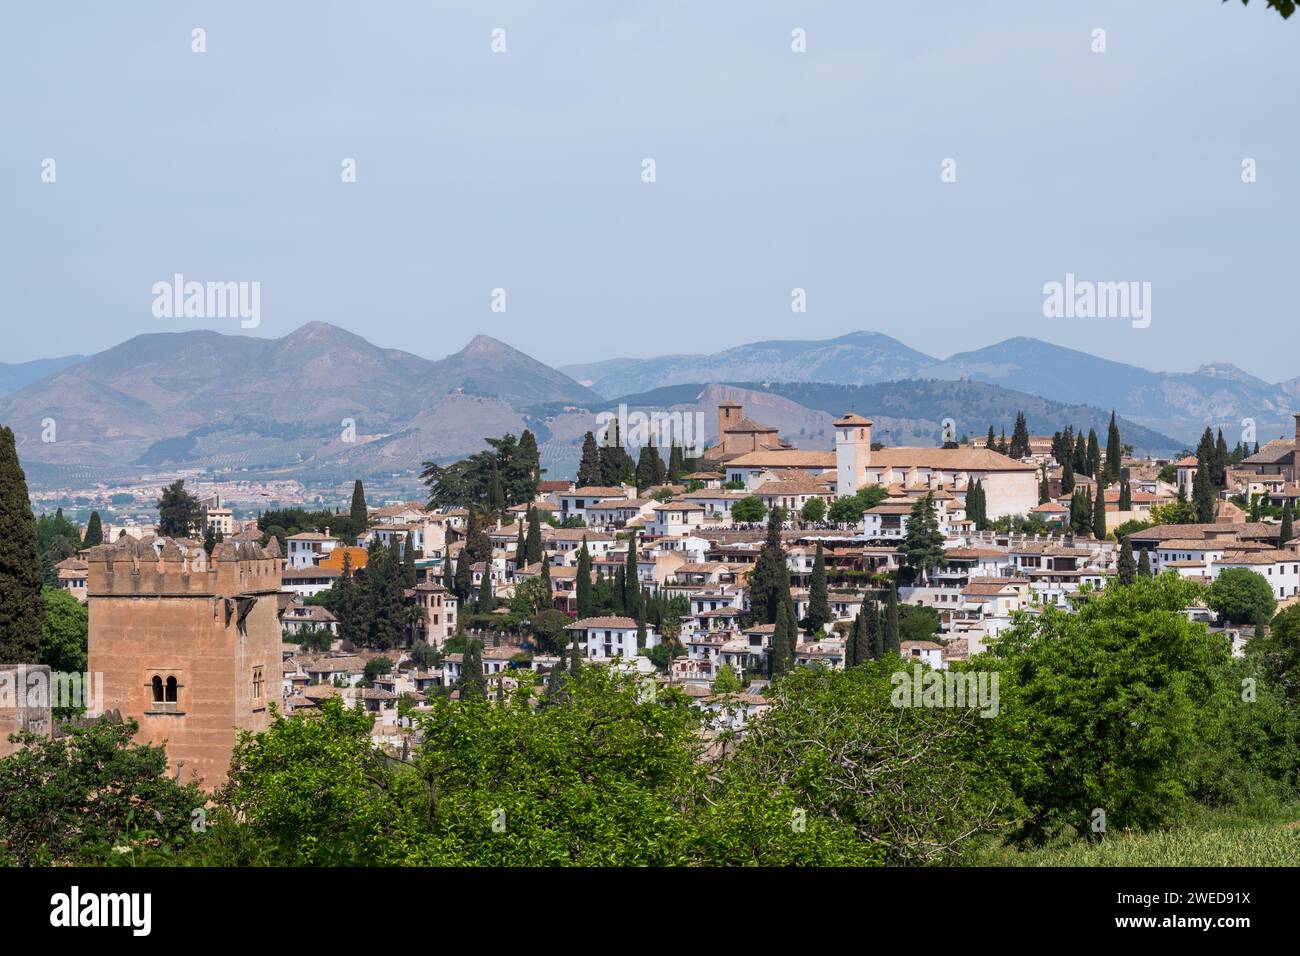 Alhambra, Espagne : un mélange époustouflant d'architecture mauresque et de patrimoine andalou, mettant en valeur la magnificence artistique de ce monument historique Banque D'Images